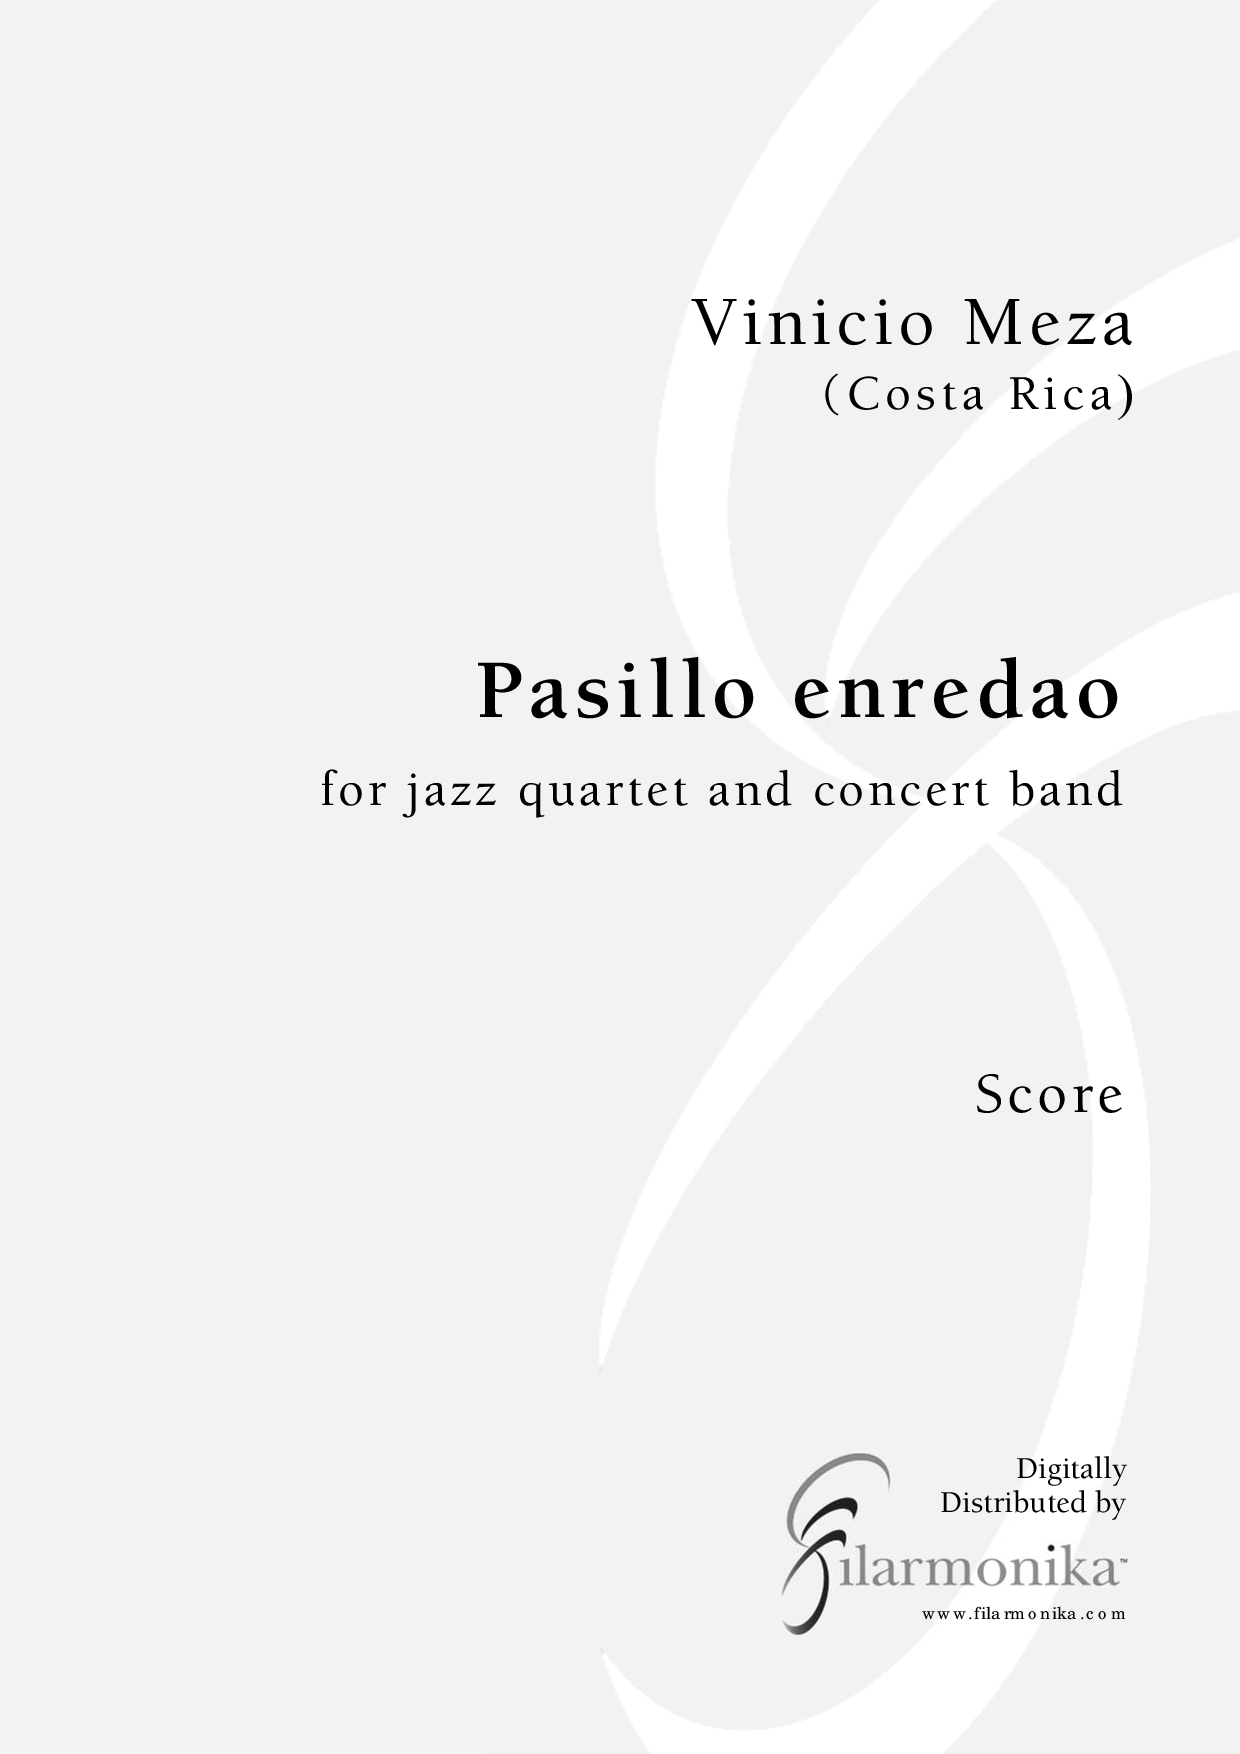 Pasillo enredao, for jazz quartet and concert band